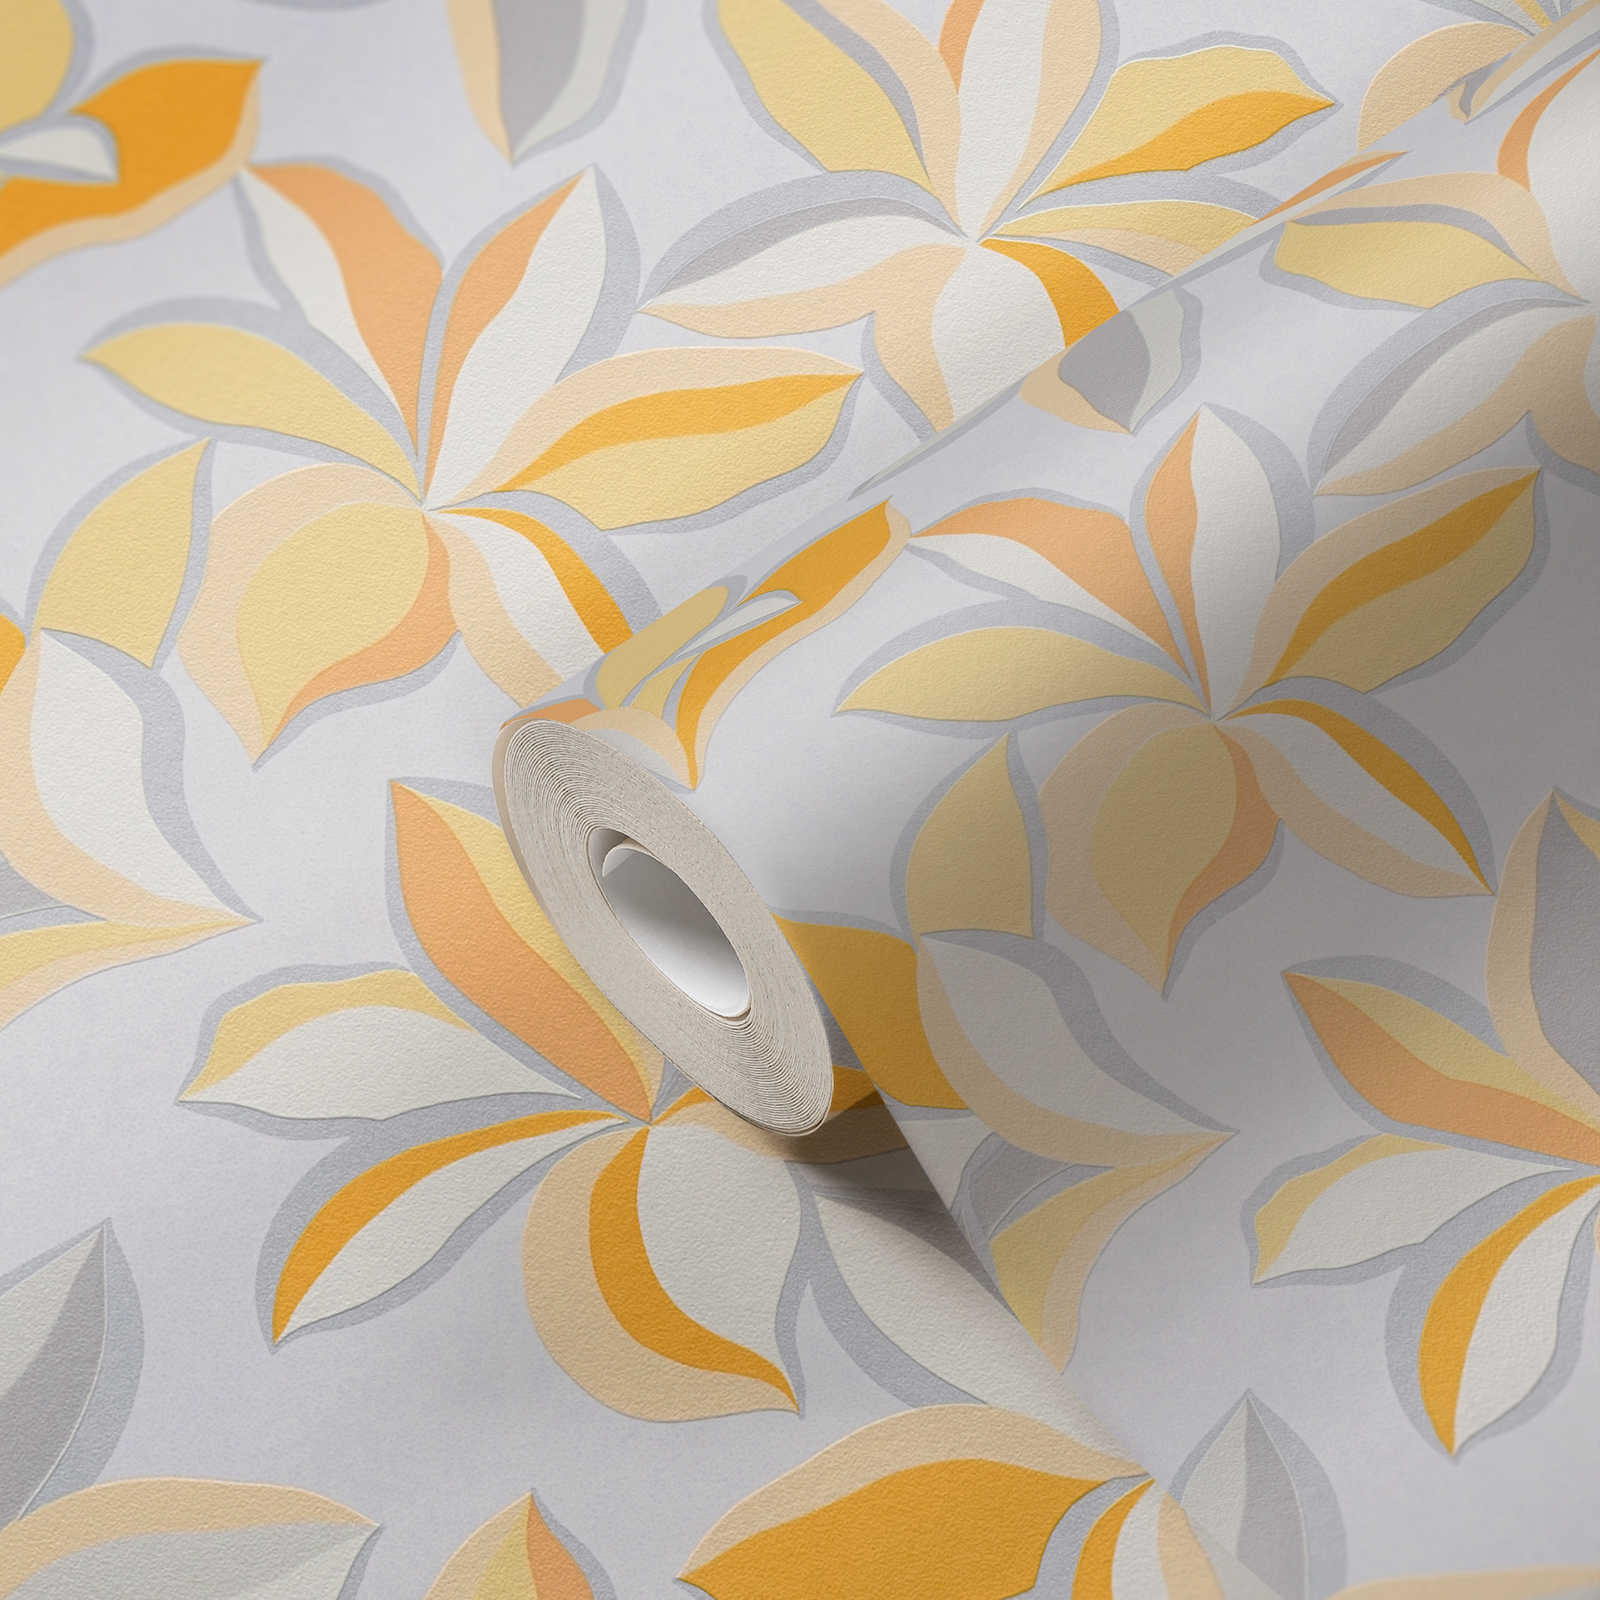             Papel pintado no tejido con motivos florales y aspecto metálico - amarillo, naranja, gris
        